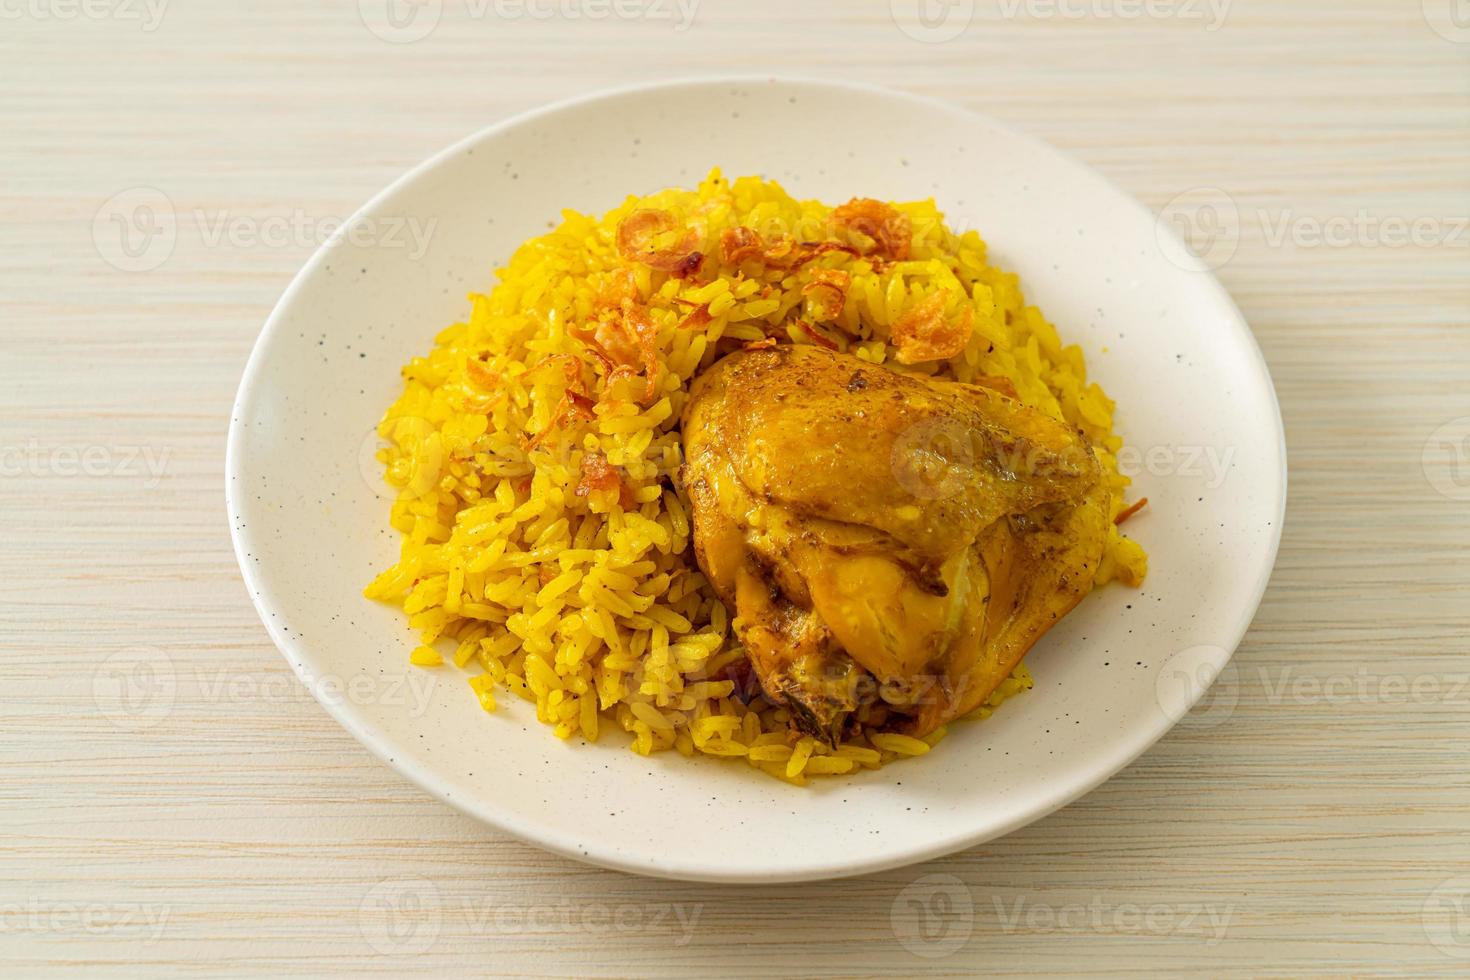 kyckling biryani eller curried ris och kyckling - thailändsk-muslimsk version av indisk biryani, med doftande gult ris och kyckling foto